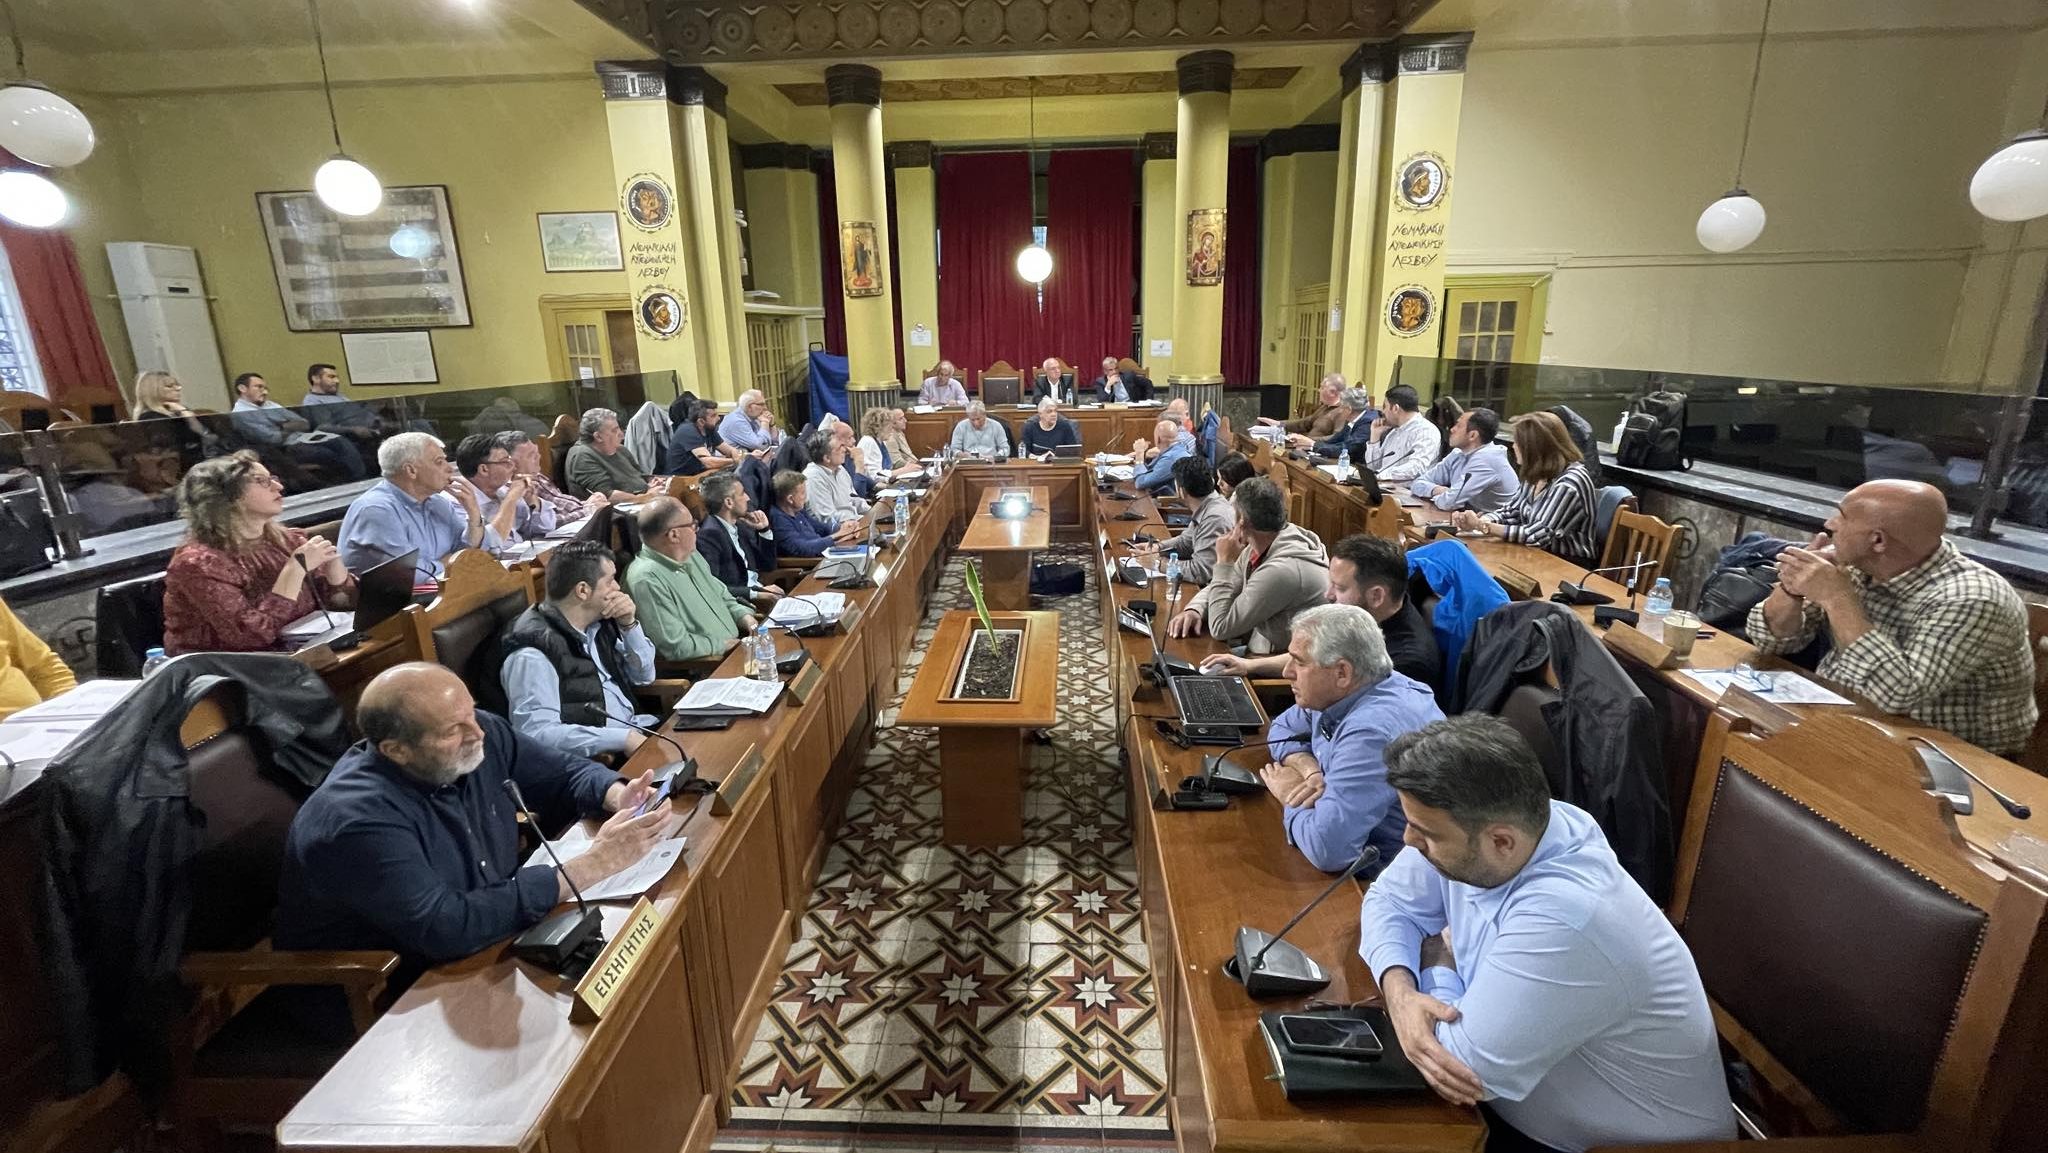 Ψήφισμα για να επιστρέψει ο «Αιολικός» στην έδρα του από το Δημοτικό Συμβούλιο Μυτιλήνης